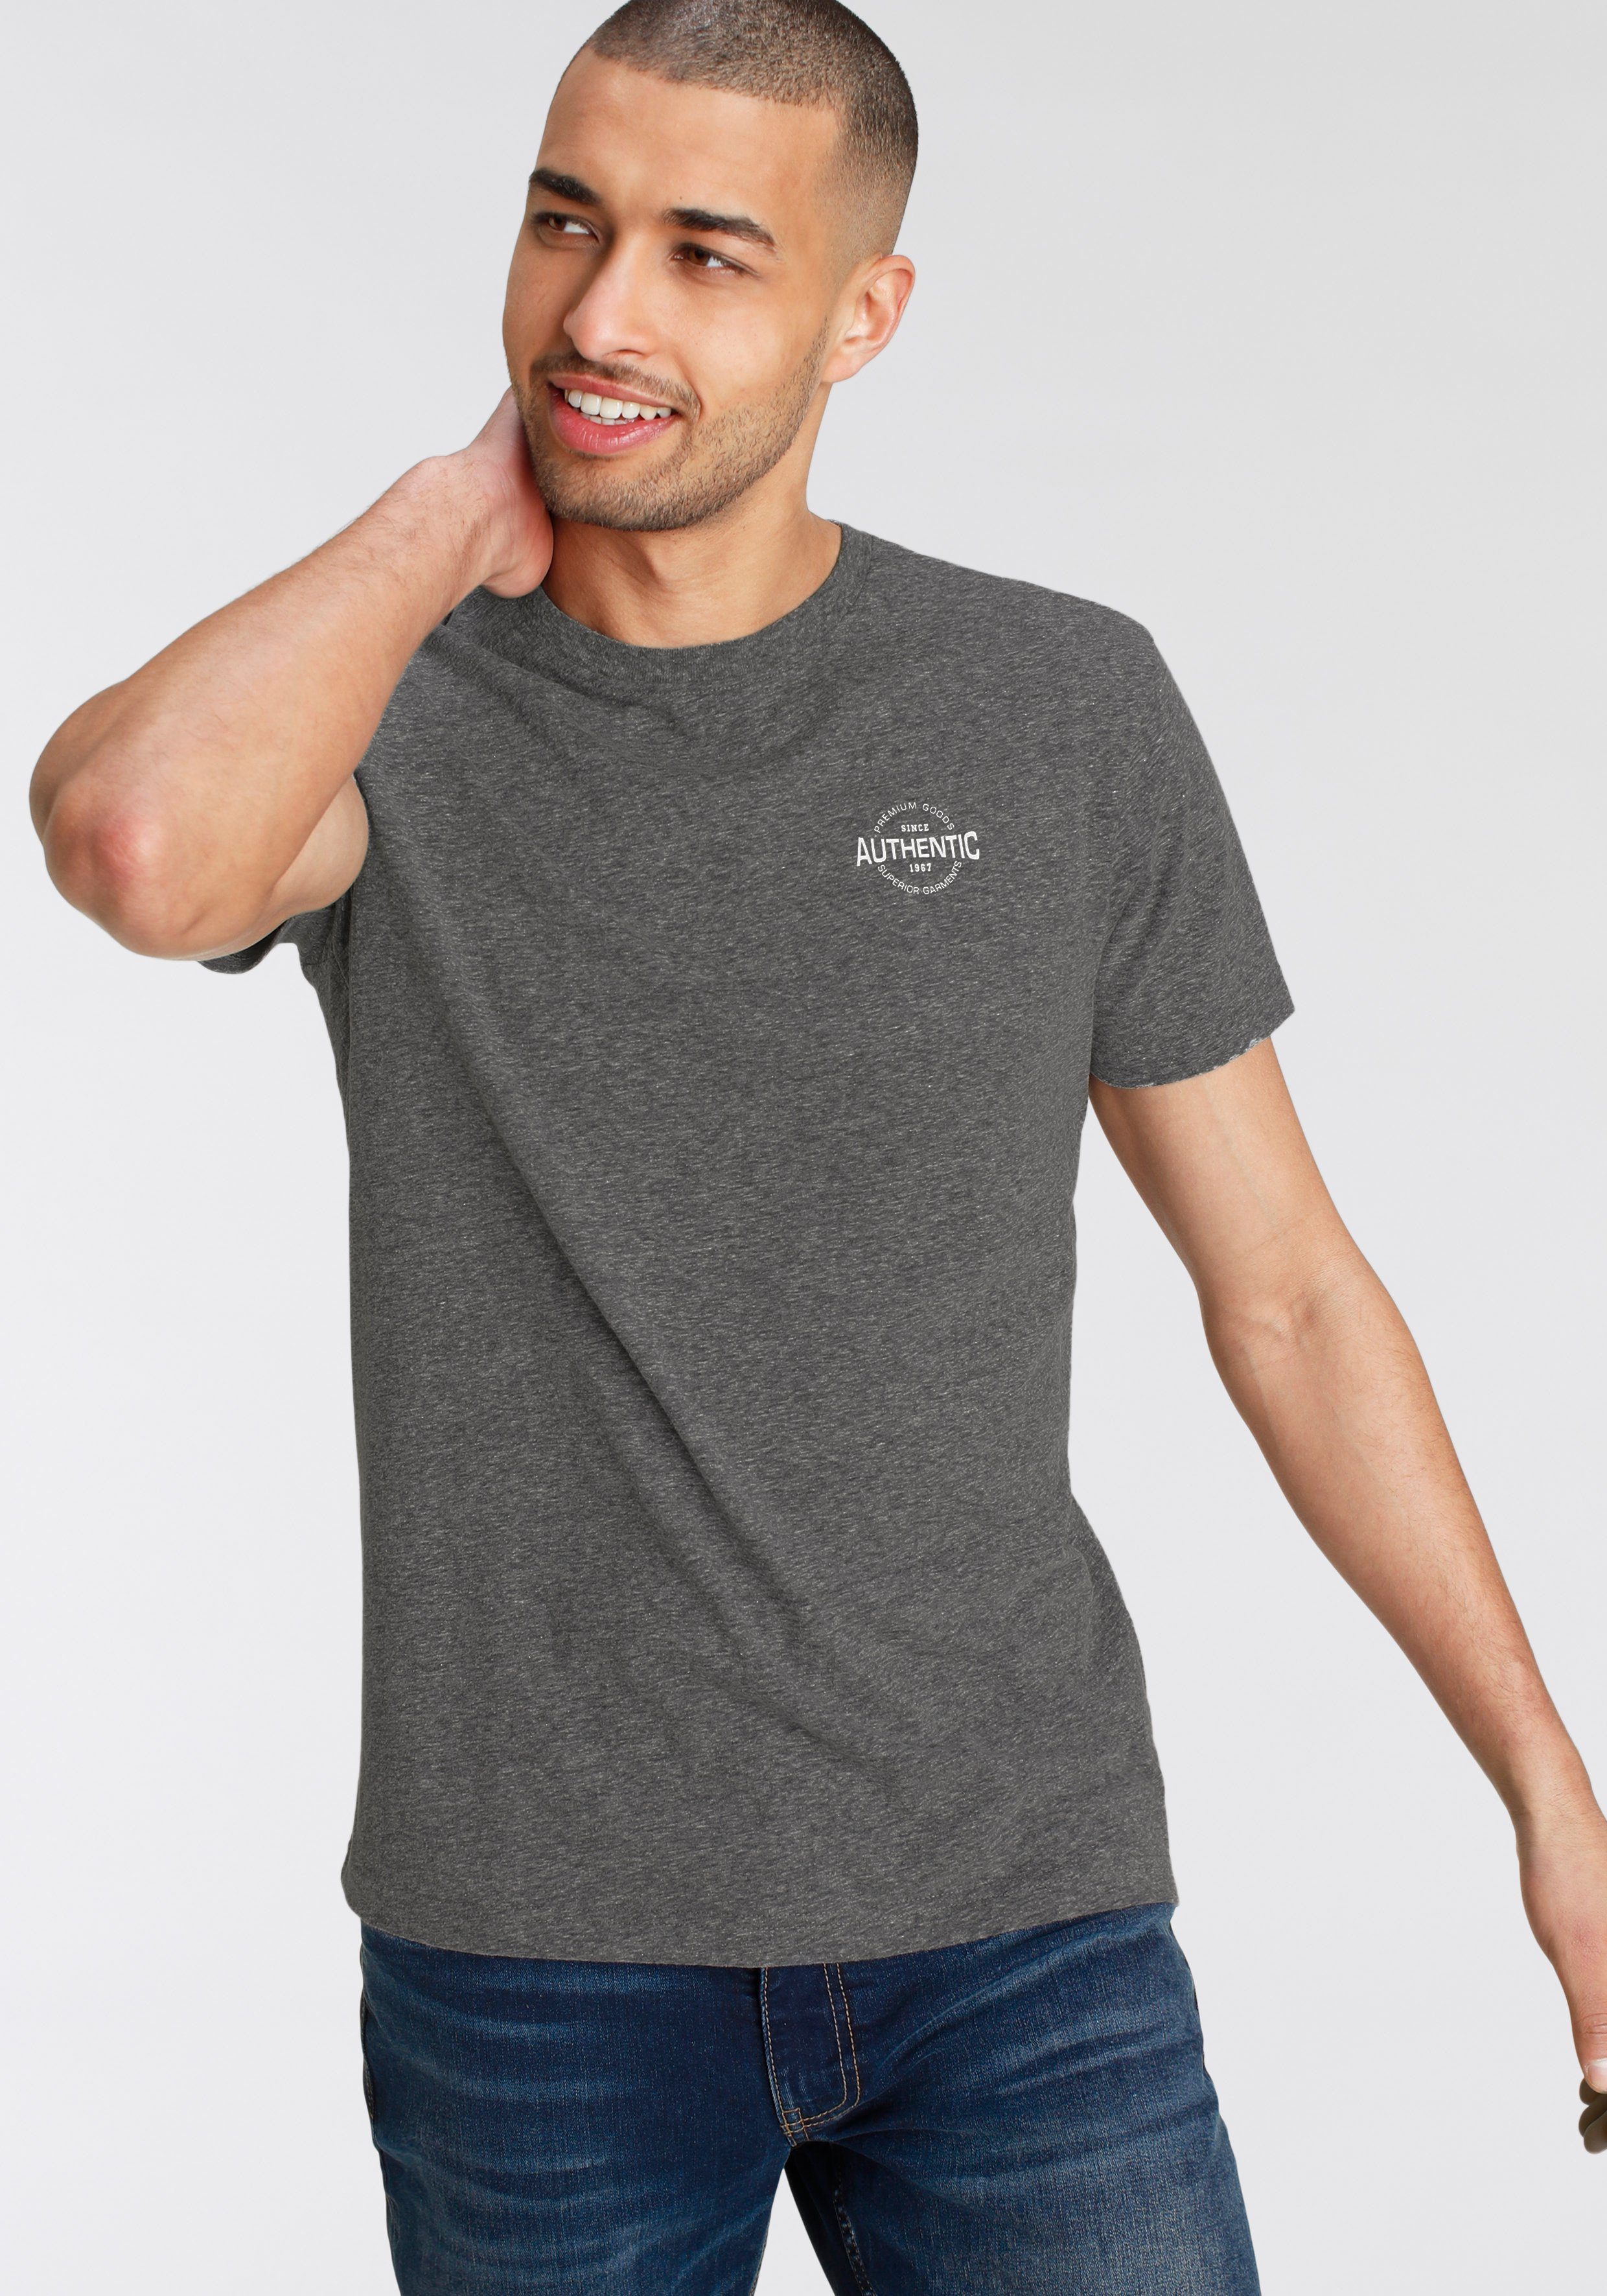 【Kostenloser Versand】 AJC T-Shirt in besonderer mit Logo und Print Optik meliert Melange anthrazit